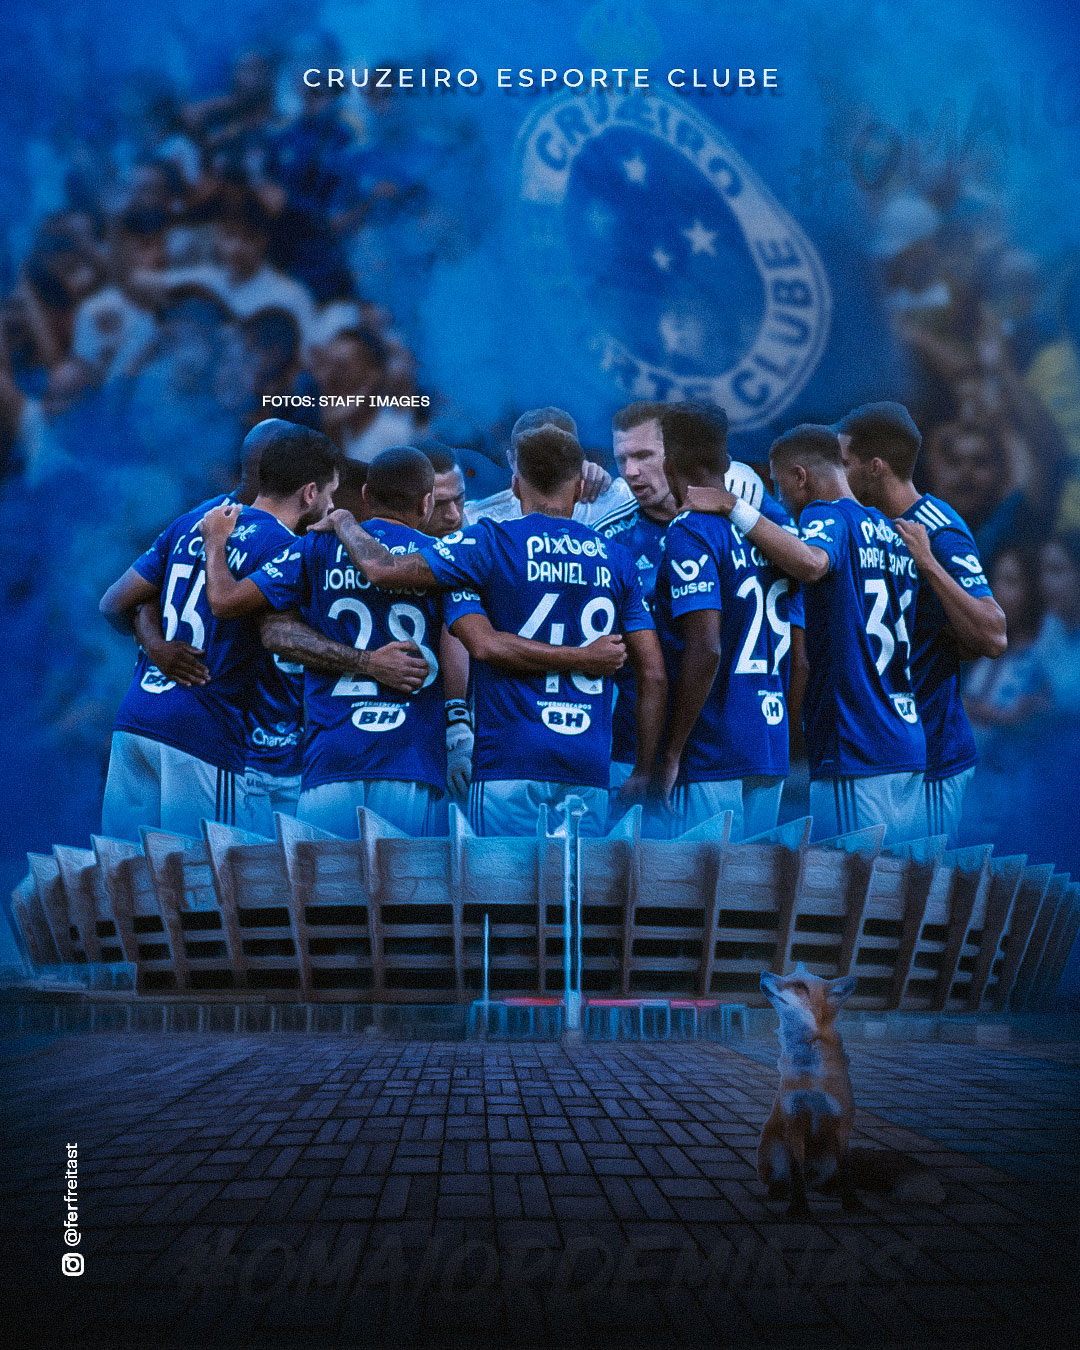 Cruzeiro Esporte Clube - Fala, Nação Azul! Fevereiro começou e com ele  divulgamos a agenda de jogos deste mês Programe-se e vamos batalhar juntos  pelas vitórias! 🔵⚪🦊 #NasBatalhasComOCruzeiro